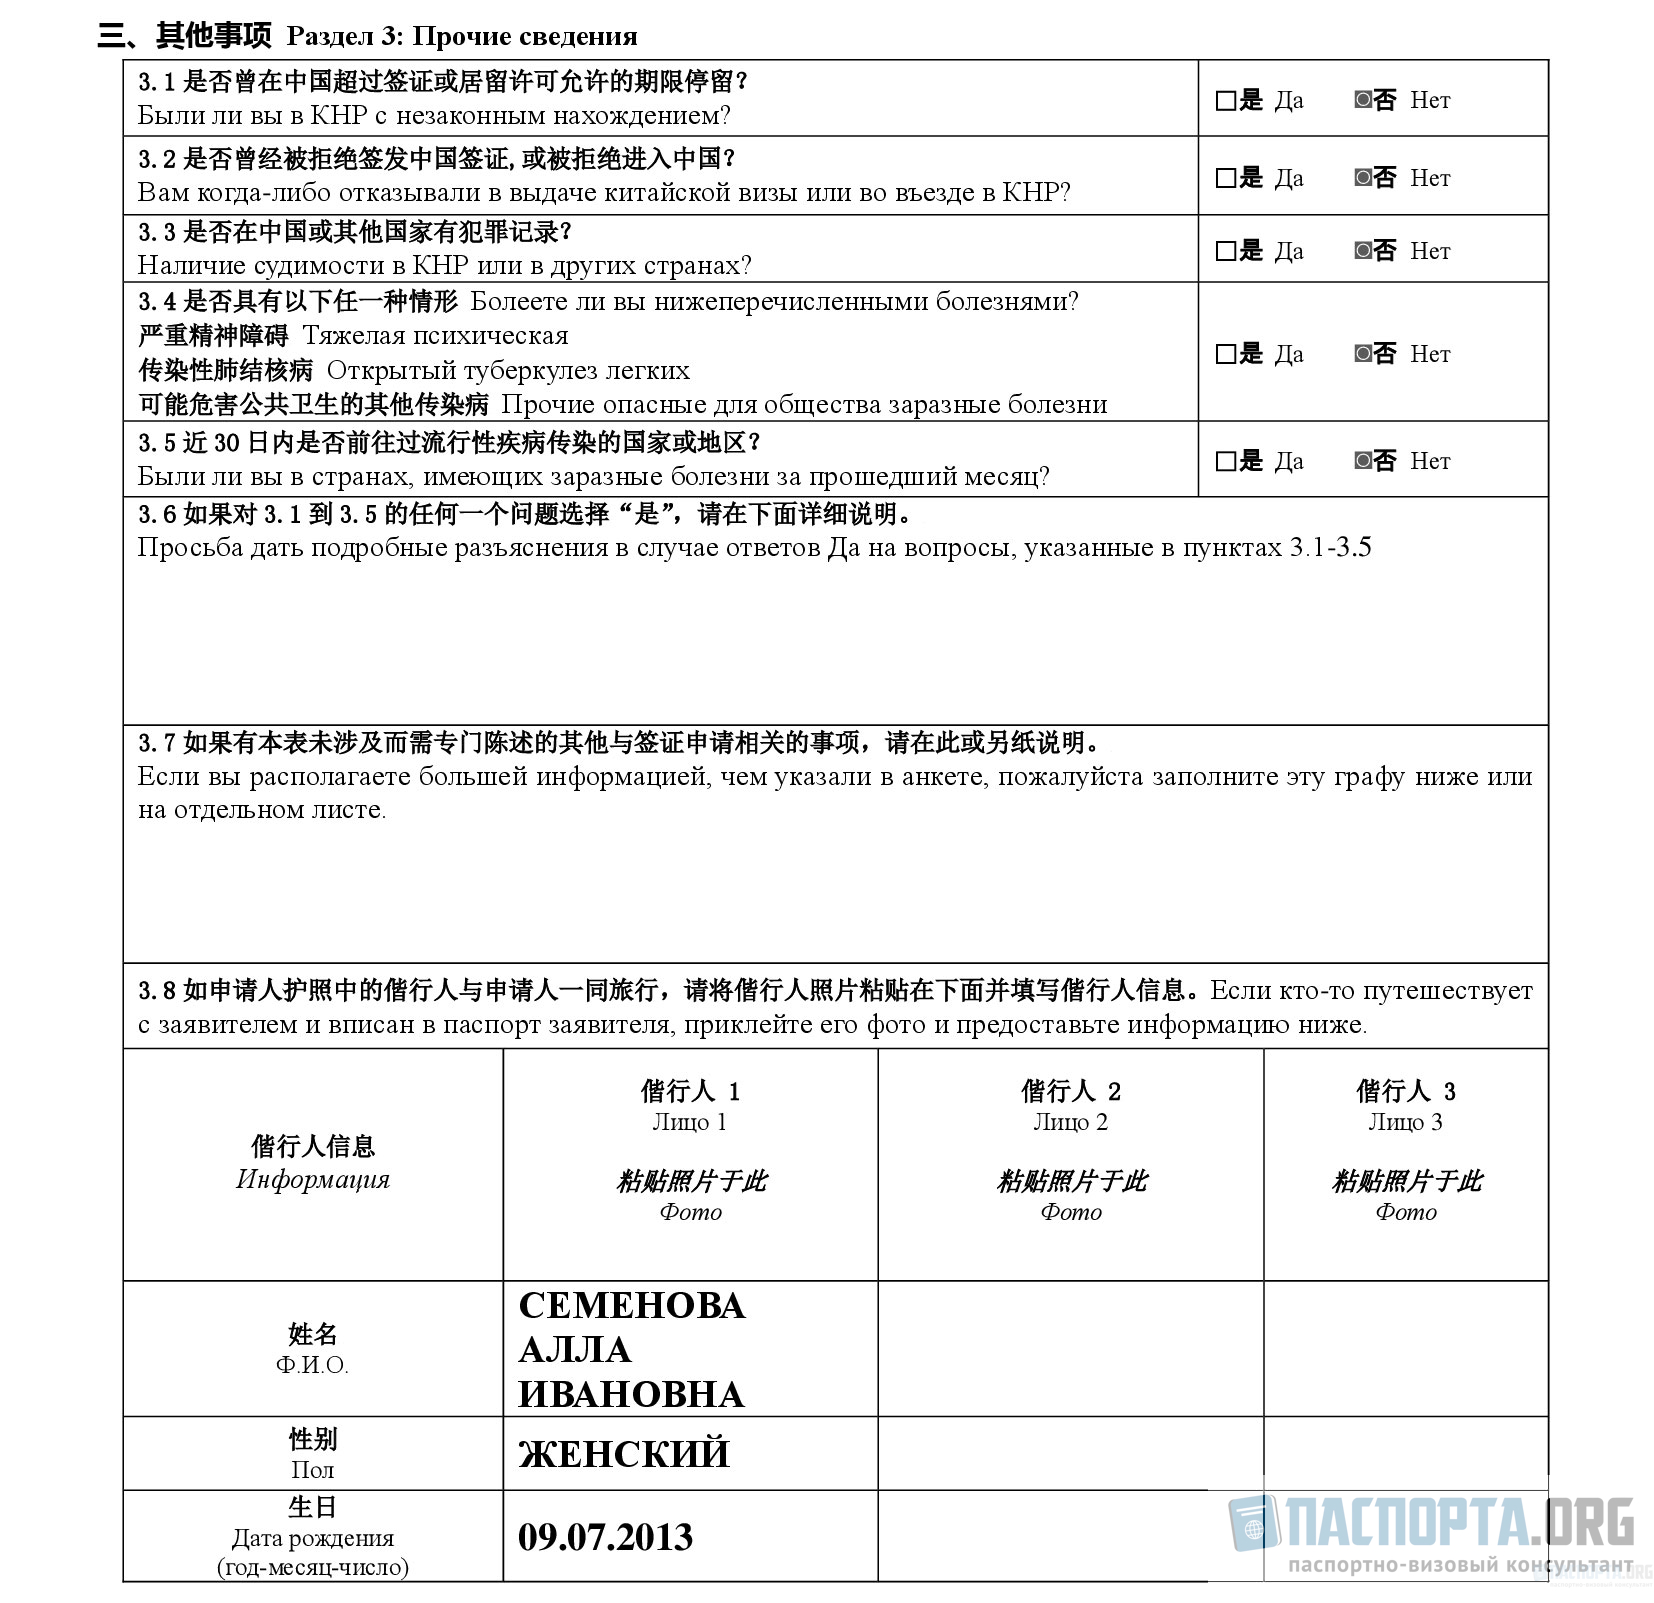 Пример заполнения анкеты на визу в Китай. Раздел 3: Прочие сведения